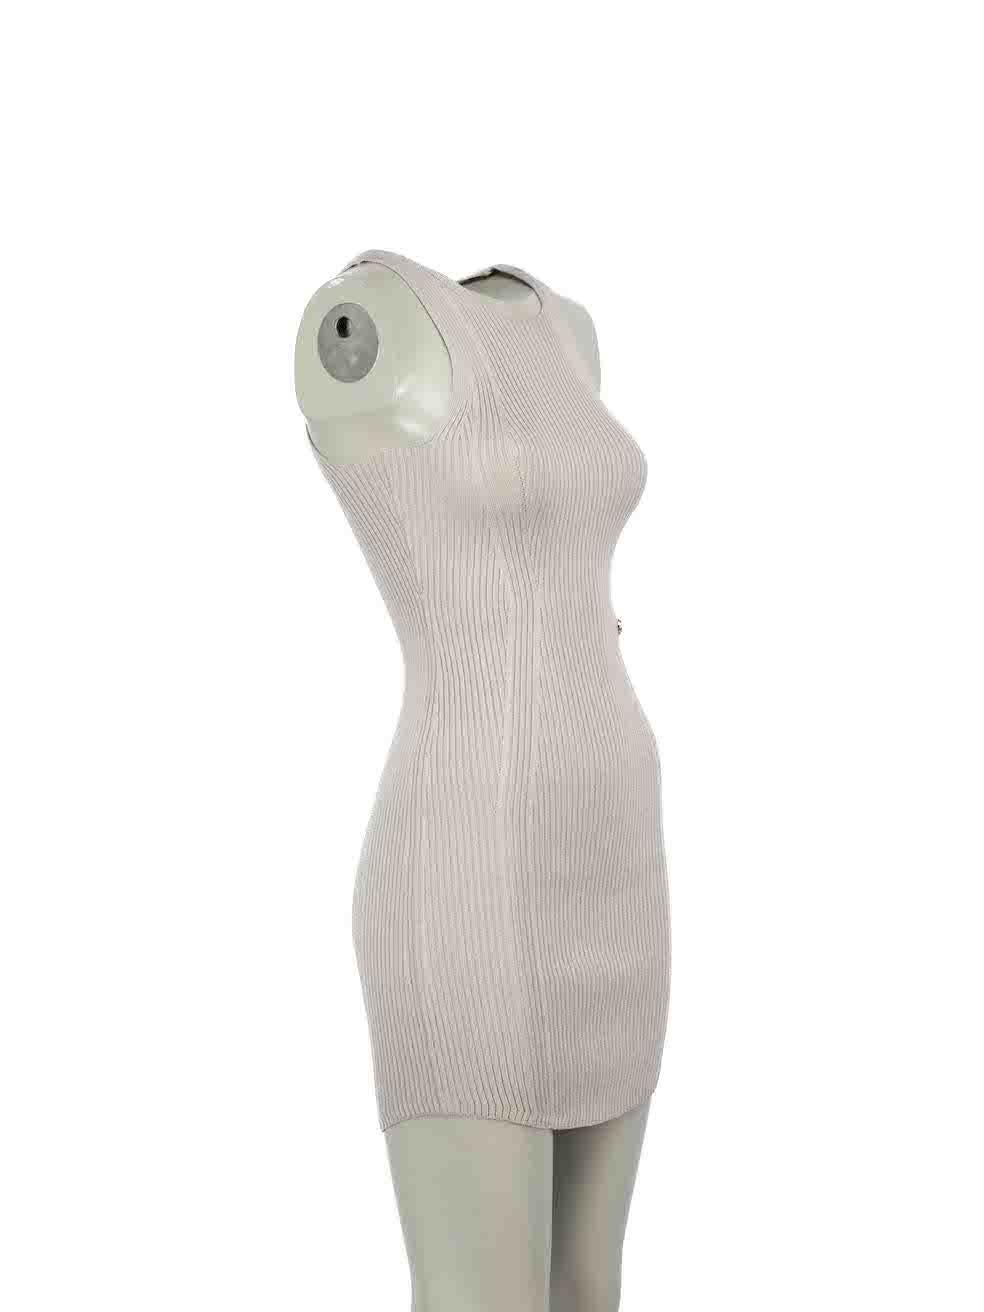 CONDIT ist sehr gut. Minimale Abnutzung des Kleides ist offensichtlich. Minimale Abnutzung der Textur des Kleides mit Zupfen an der Strickware bei diesem gebrauchten Balmain Designer-Wiederverkaufsartikel.
